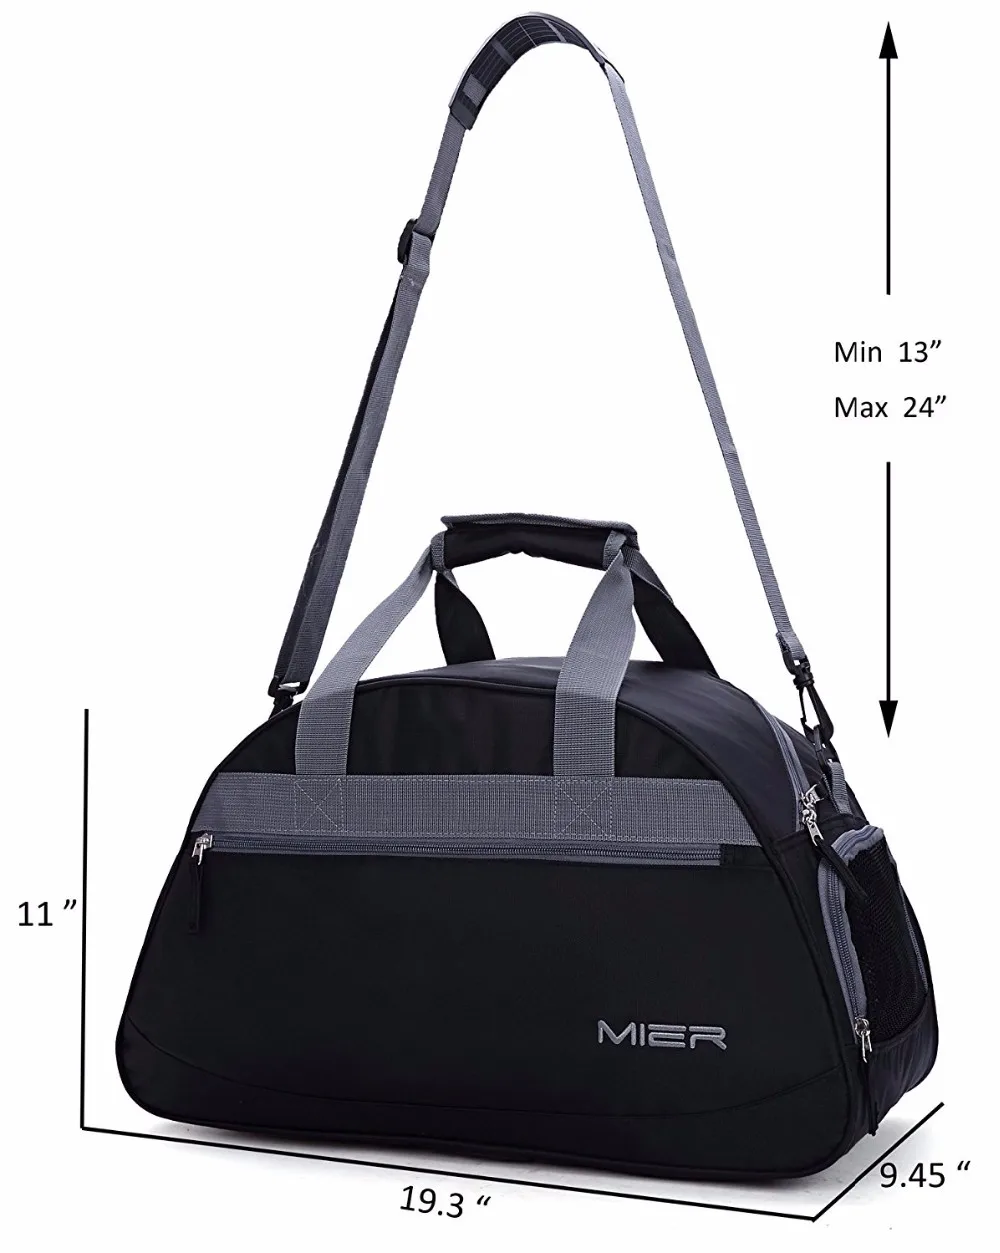 Stylish Multifunction Unisex 20" Sports Gym Bag Travel